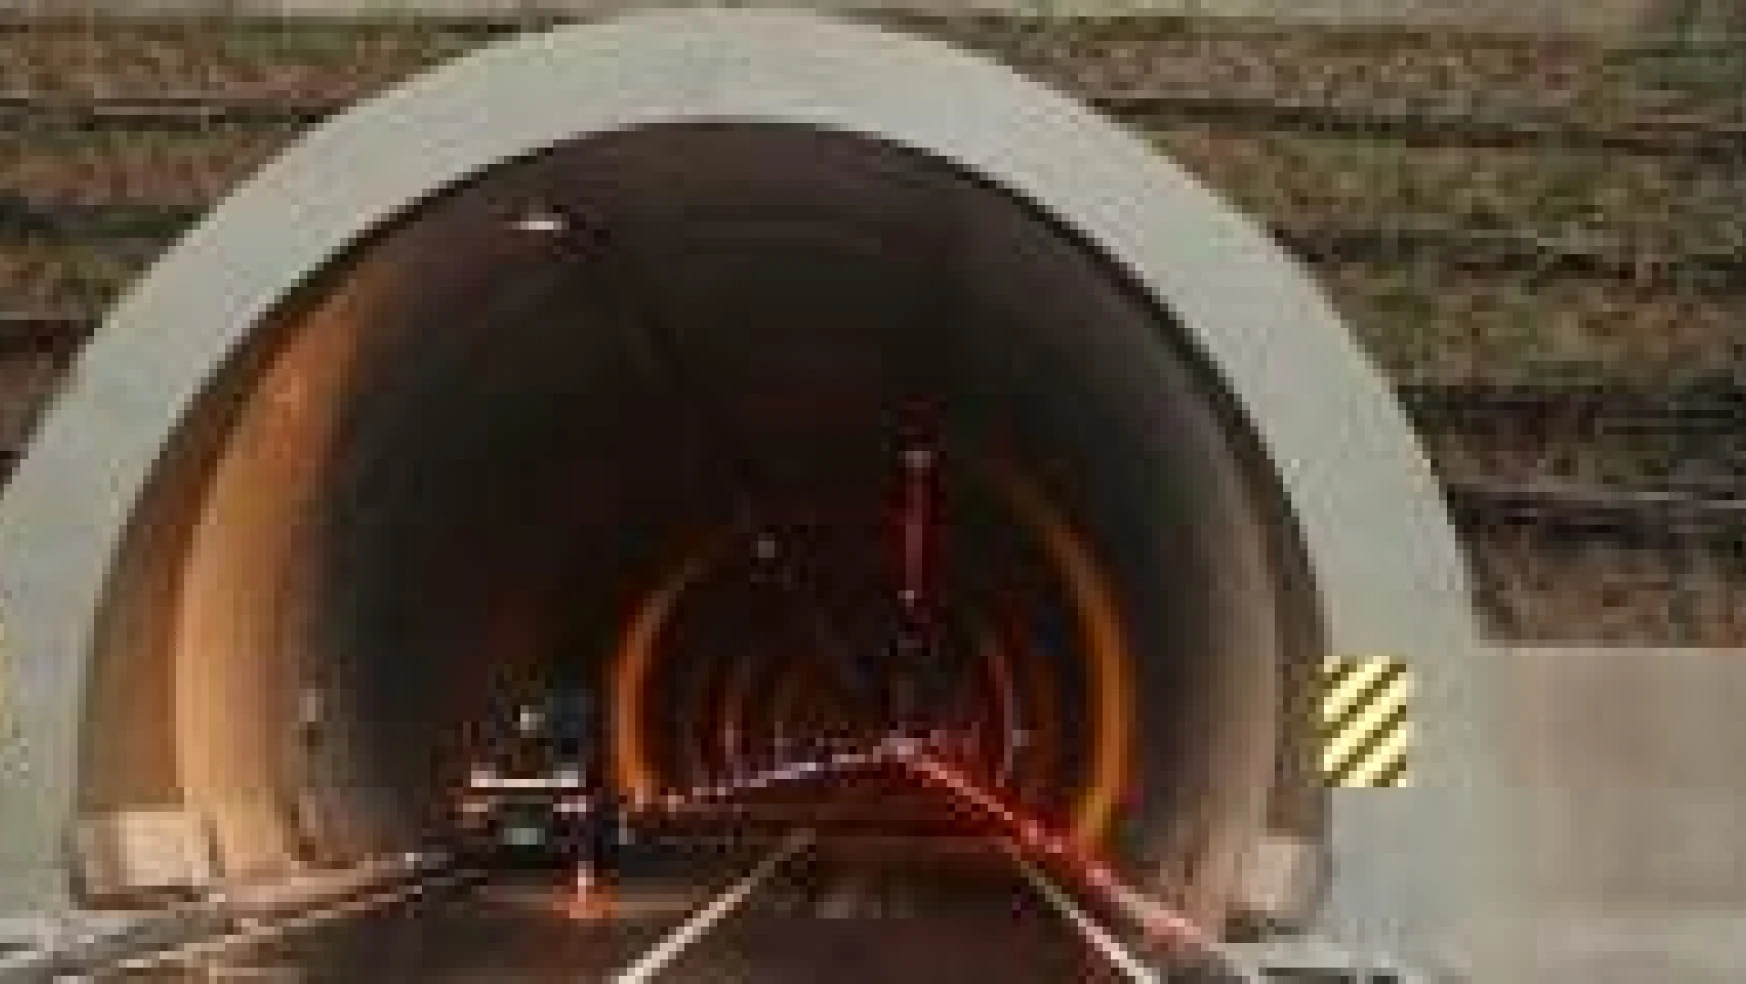 Amasra tüneli ne zaman açılacak?